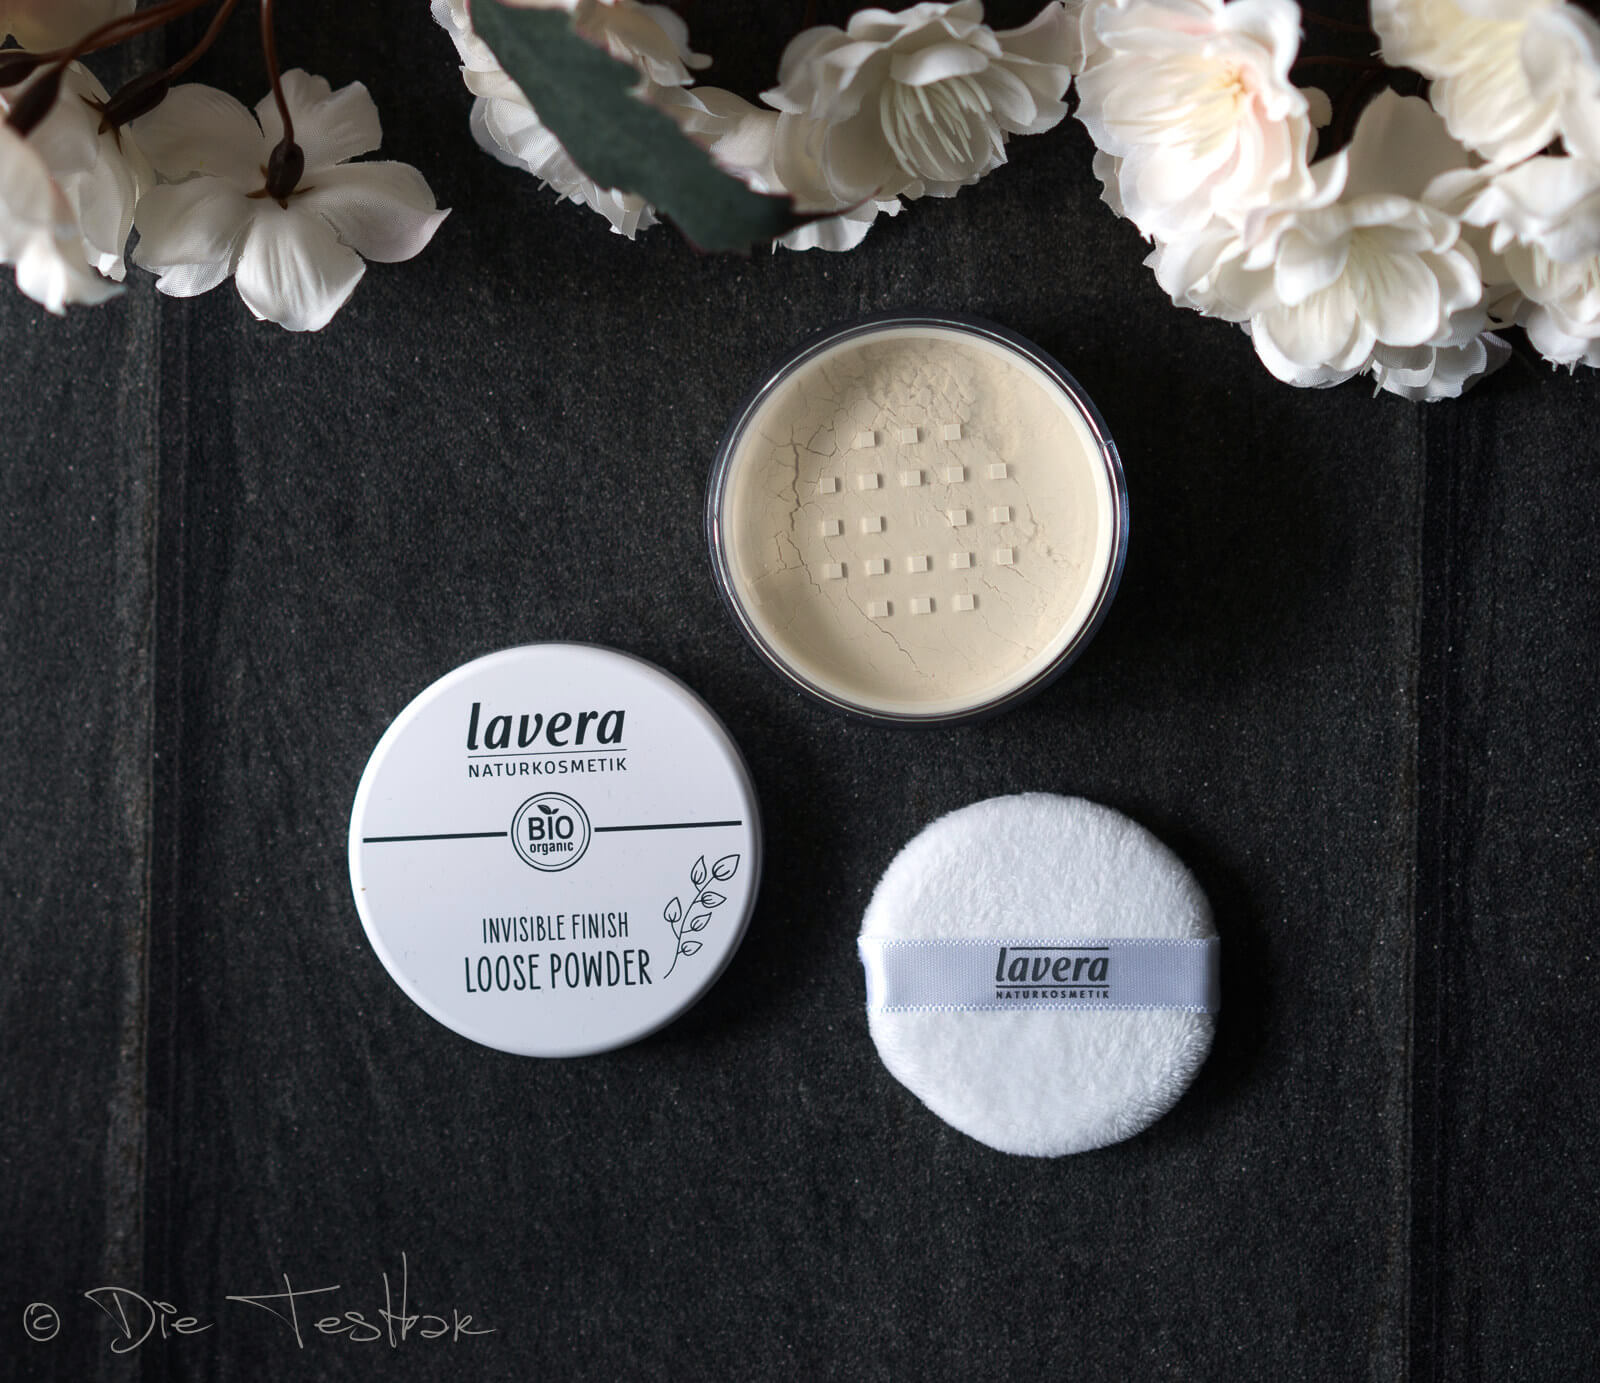 lavera - Dekorative Kosmetik - Neu im Sortiment - Bronzer, Rouge, Grundierung und Eyeshadows 5